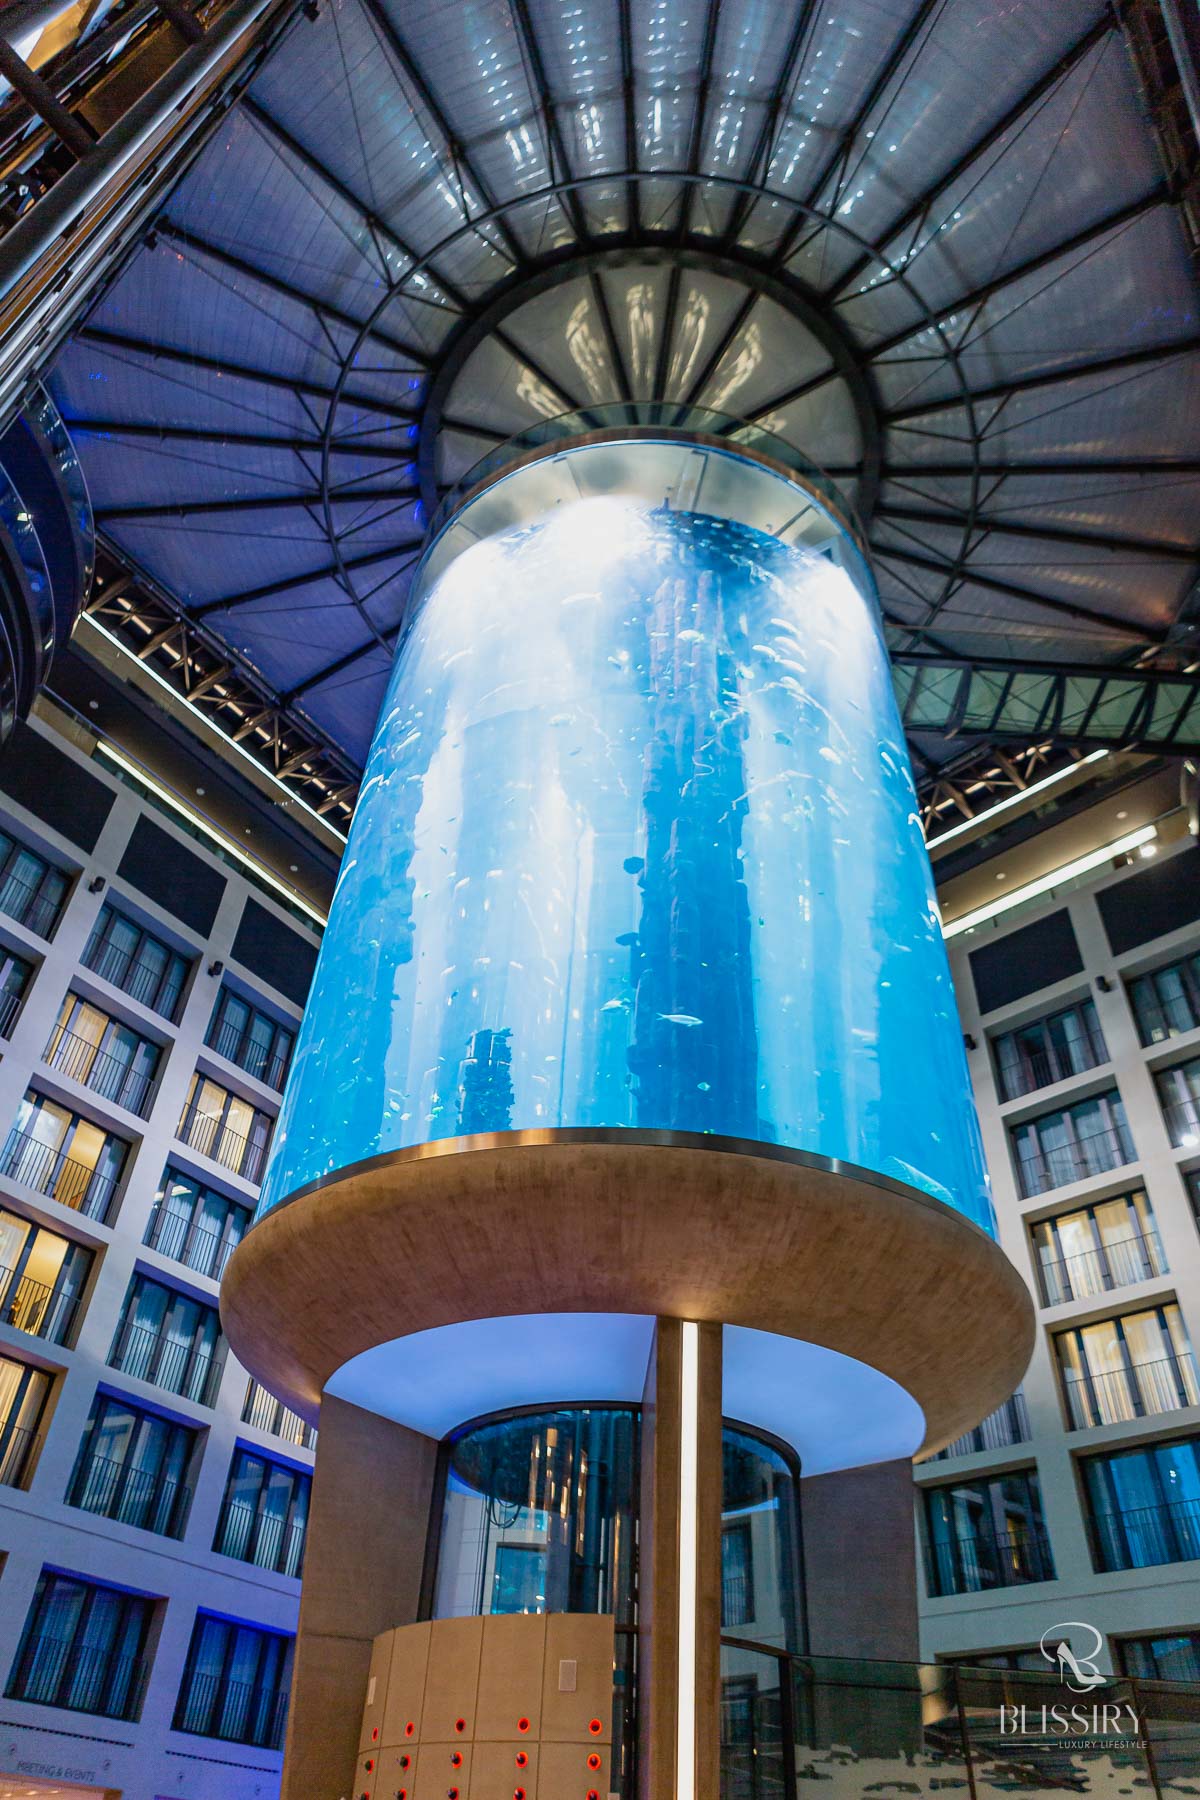 Aquadom Berlin - Heiraten im Aquarium Aufzug - eine besondere Hochzeitslocation - 1500 Fische als Trauzeugen